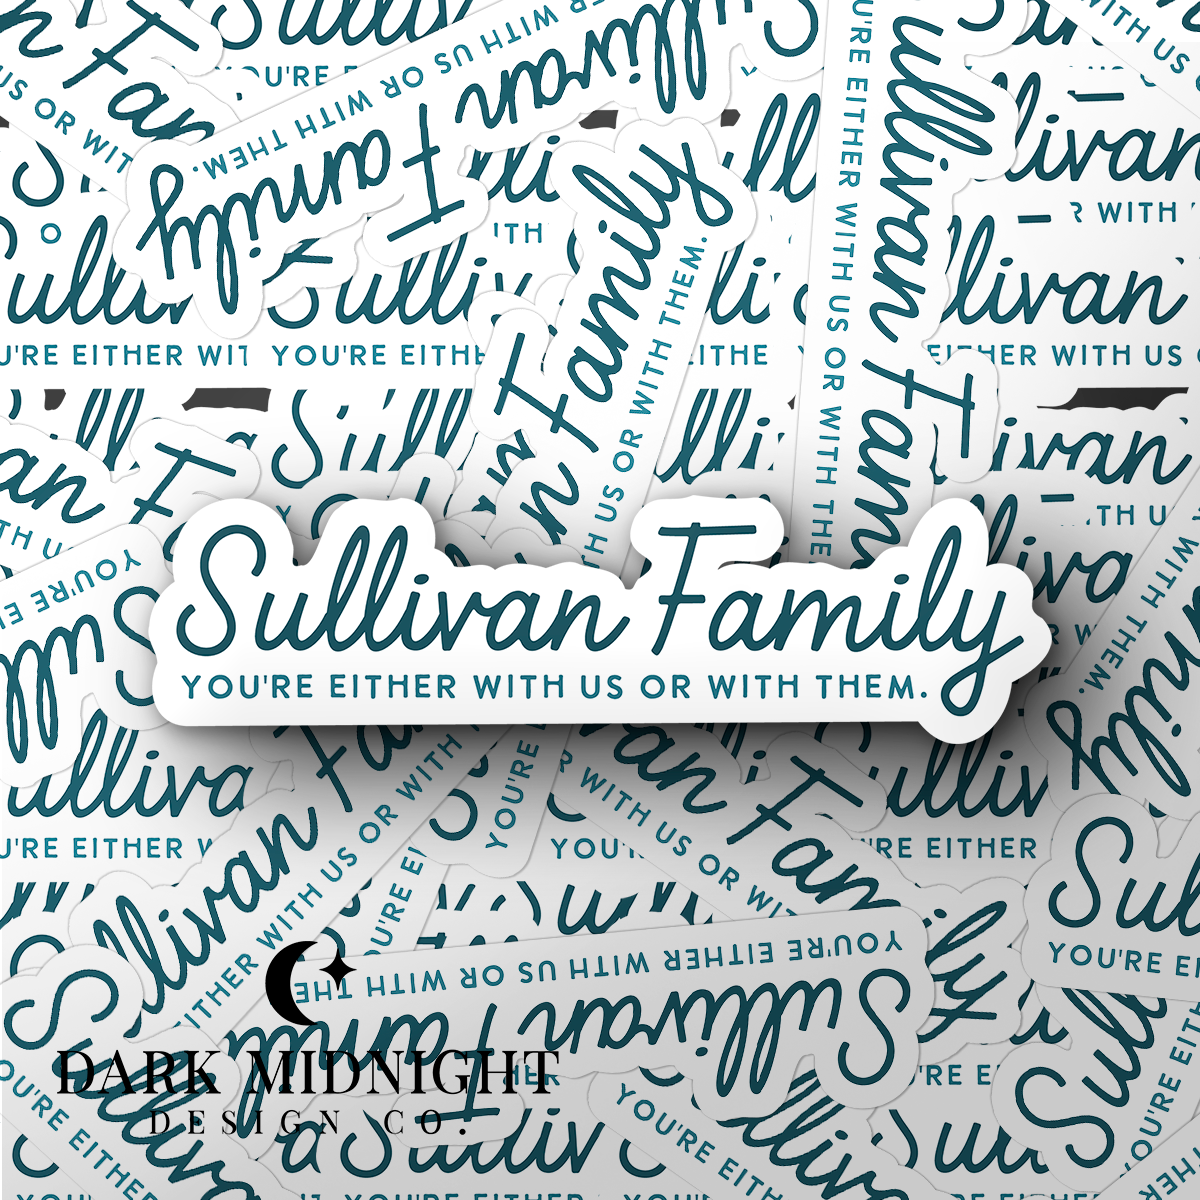 Sullivan Family Logo Sticker - Officially Licensed Sullivan Family Series